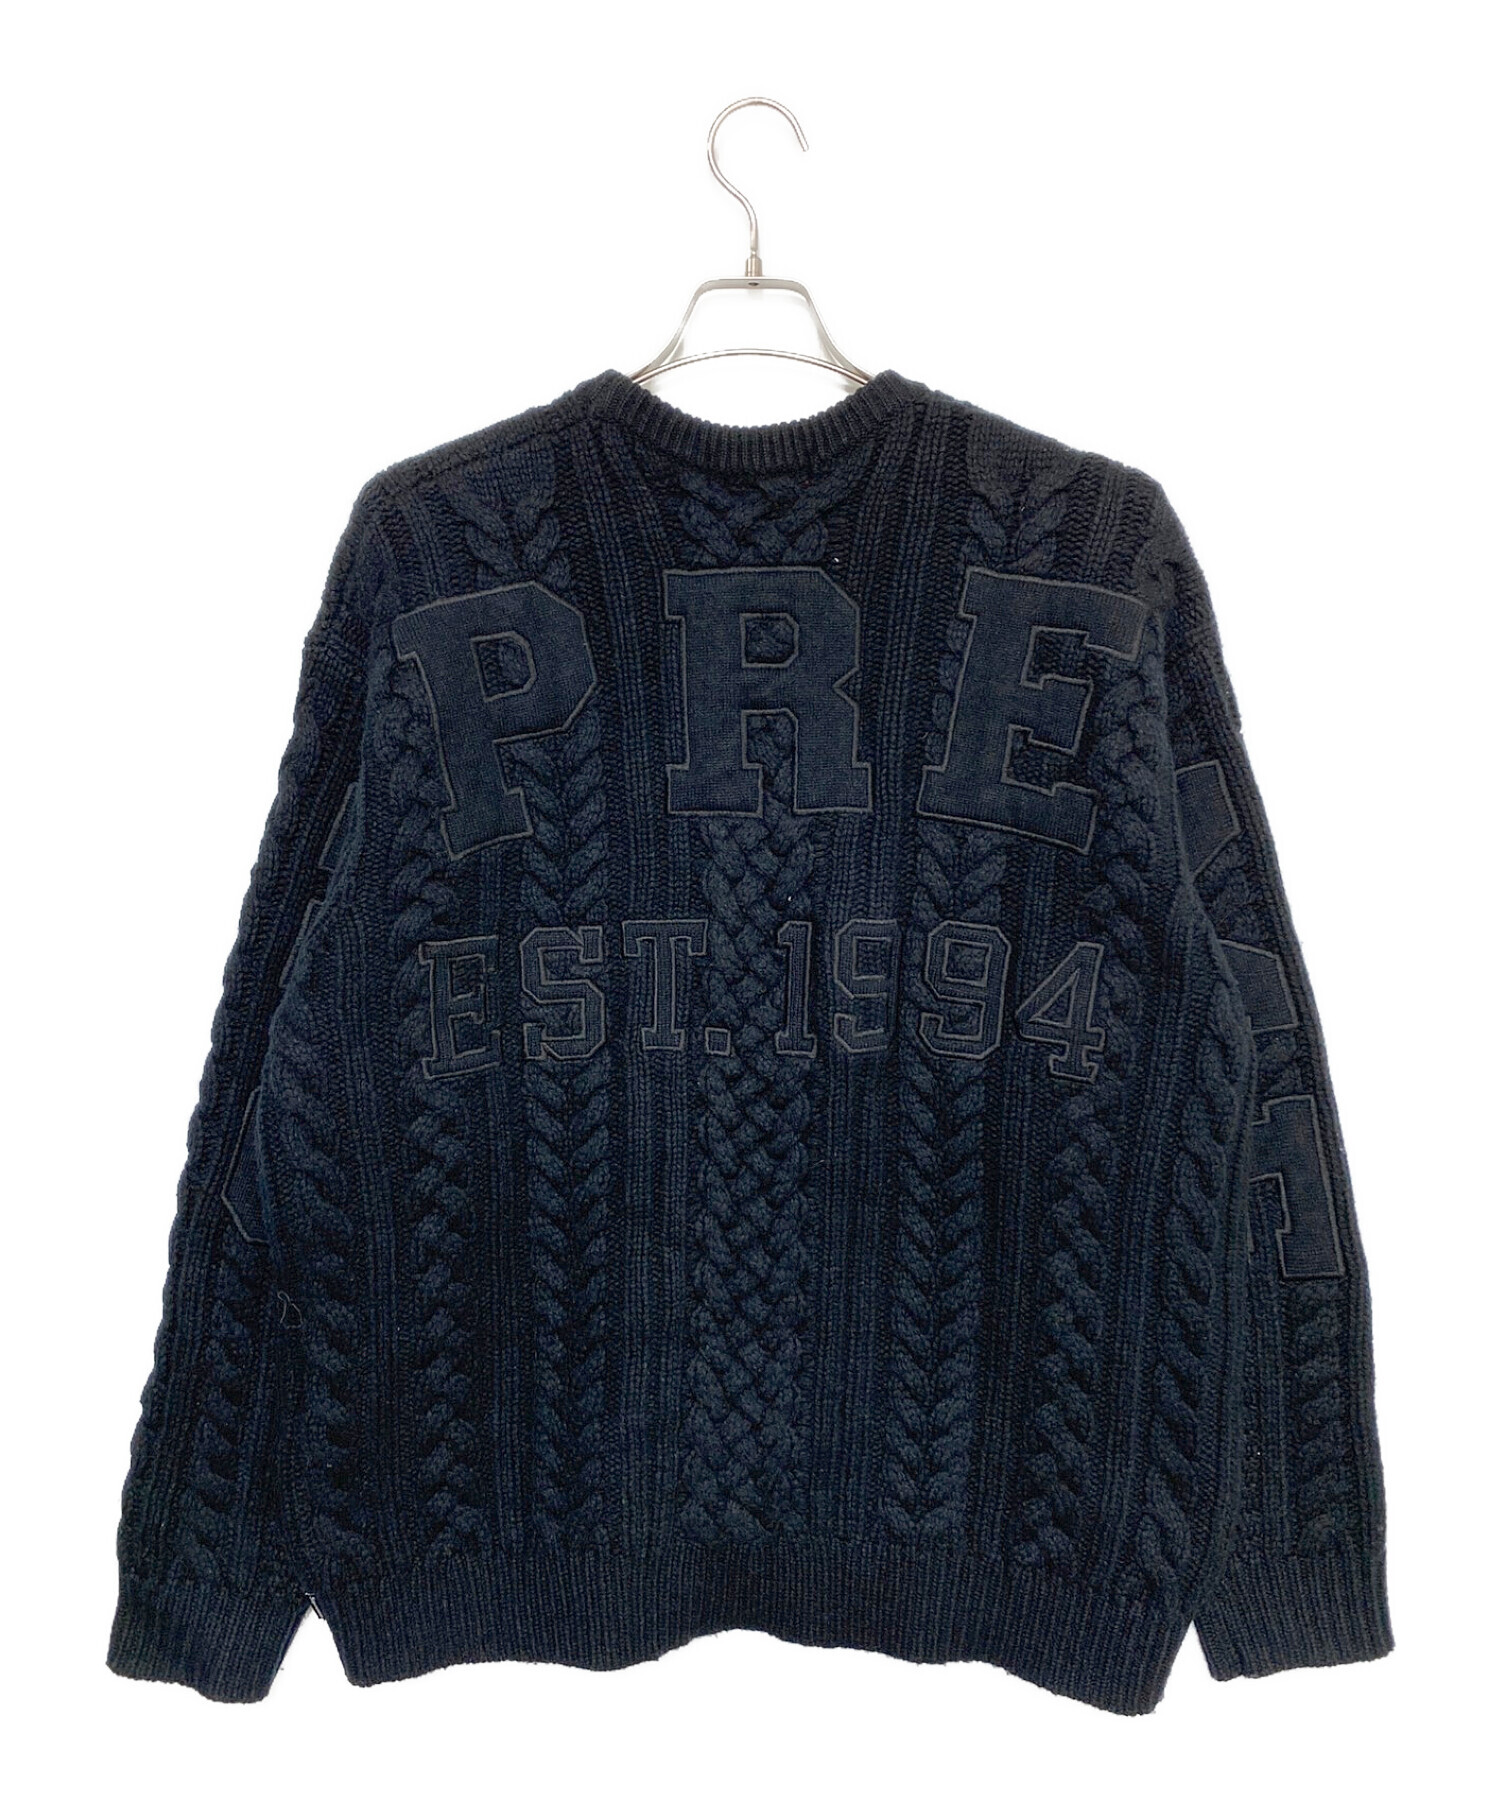 SUPREME (シュプリーム) Applique Cable Knit Sweater ブラック サイズ:M